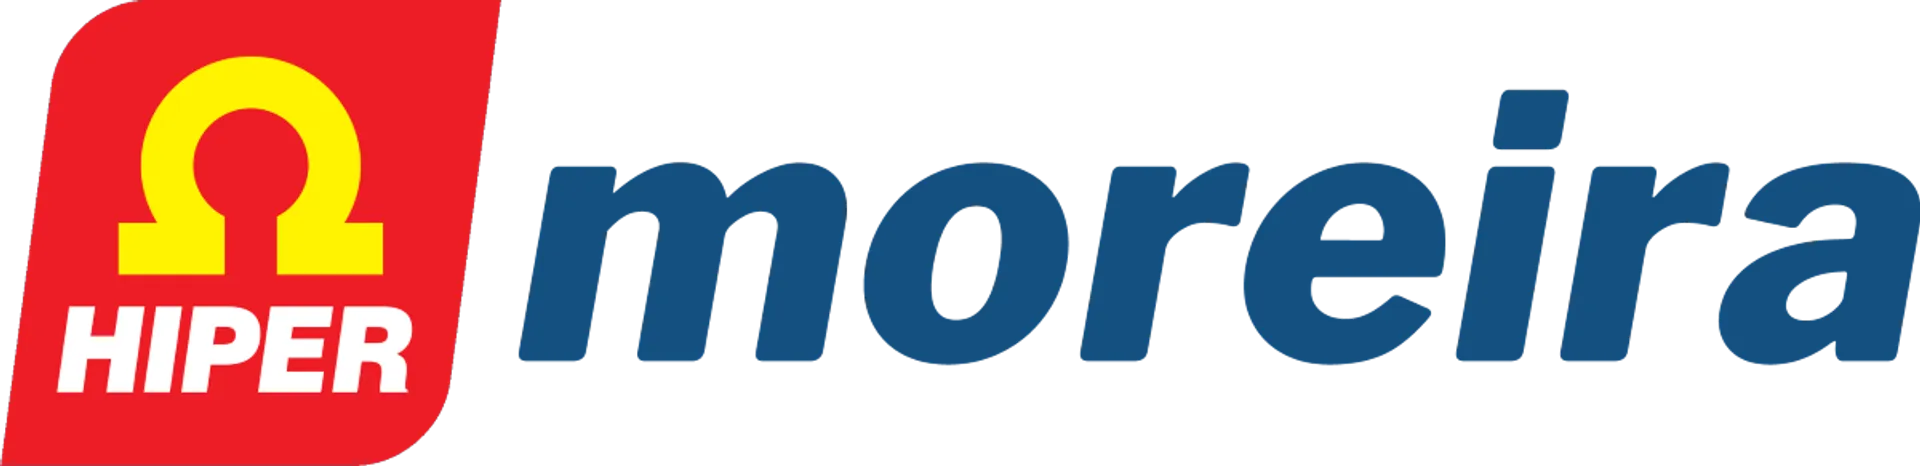 HIPER MOREIRA logo